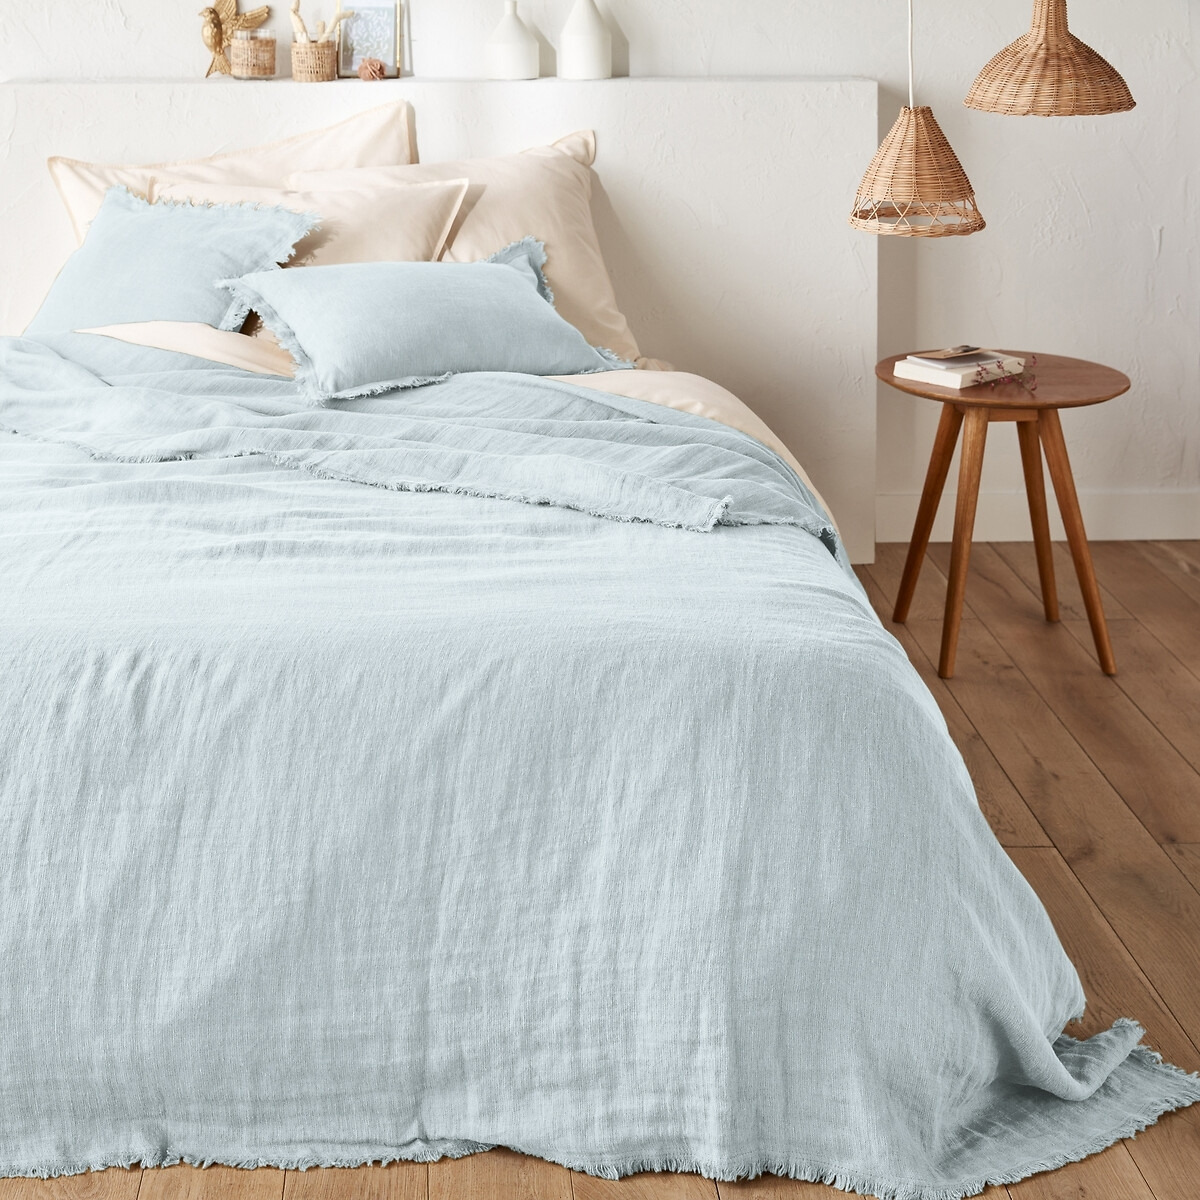 Linange Washed Linen Bedspread - image 1